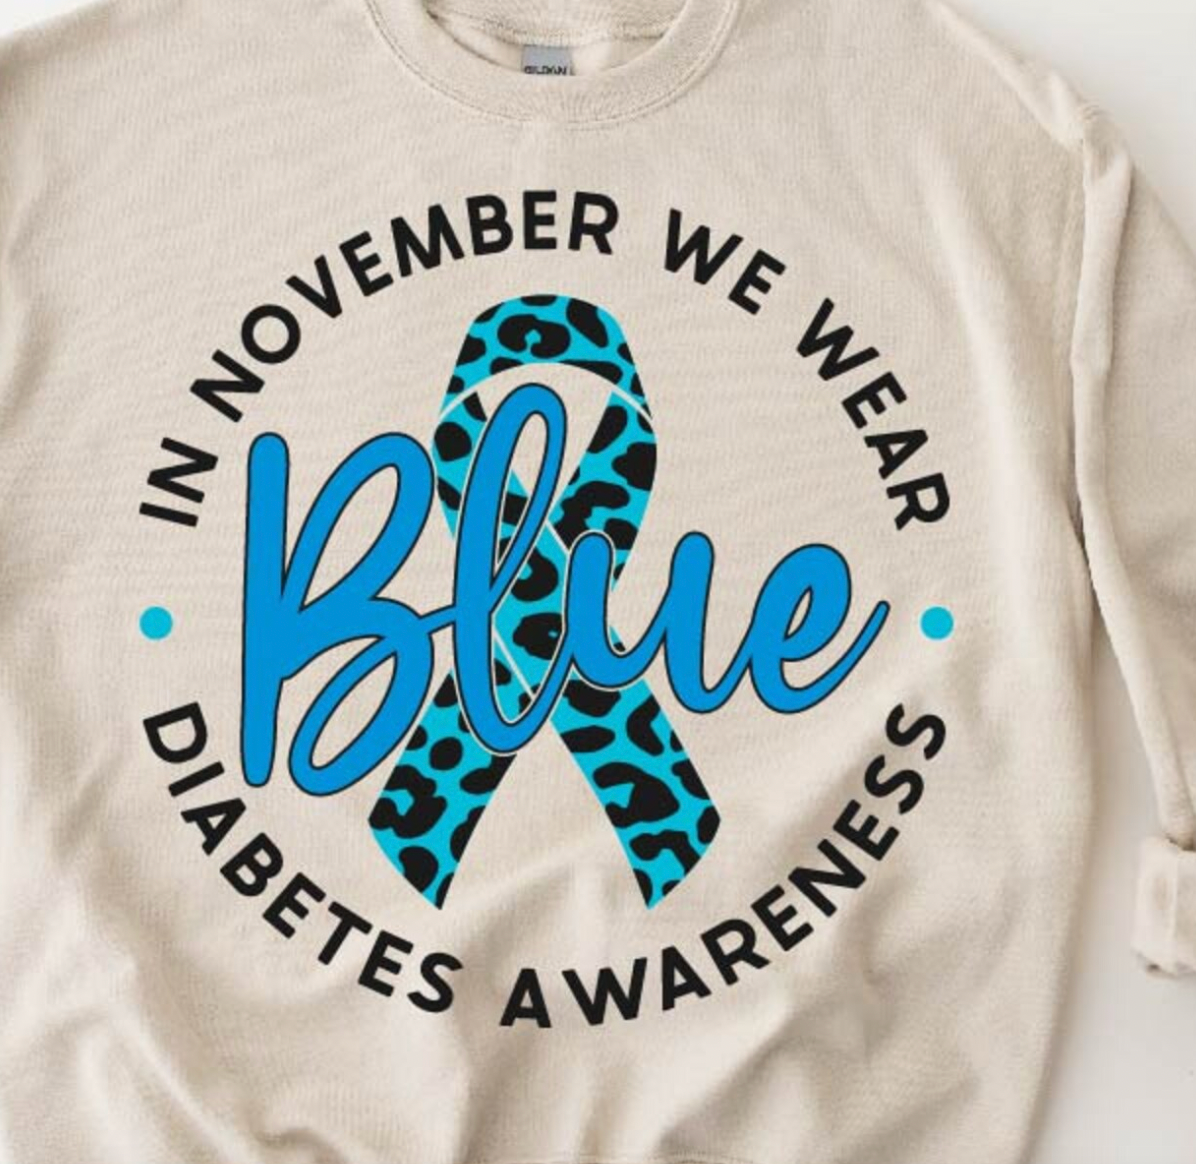 In November We Wear Blue (Diabetes)